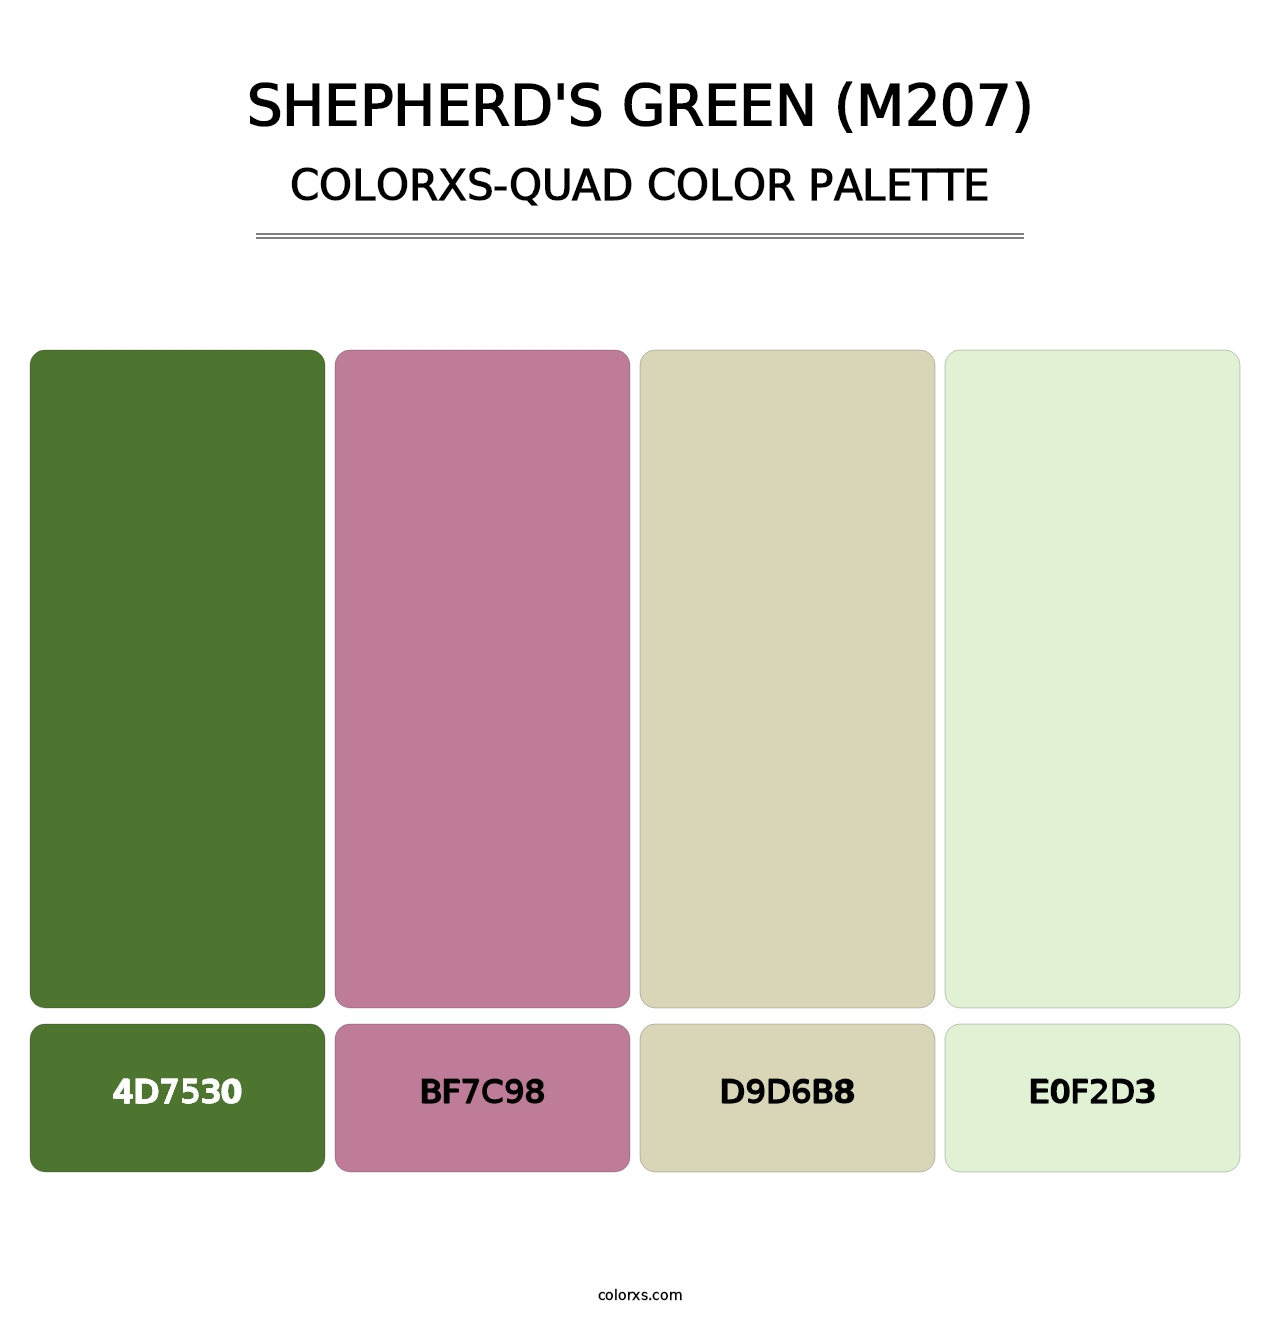 Shepherd's Green (M207) - Colorxs Quad Palette